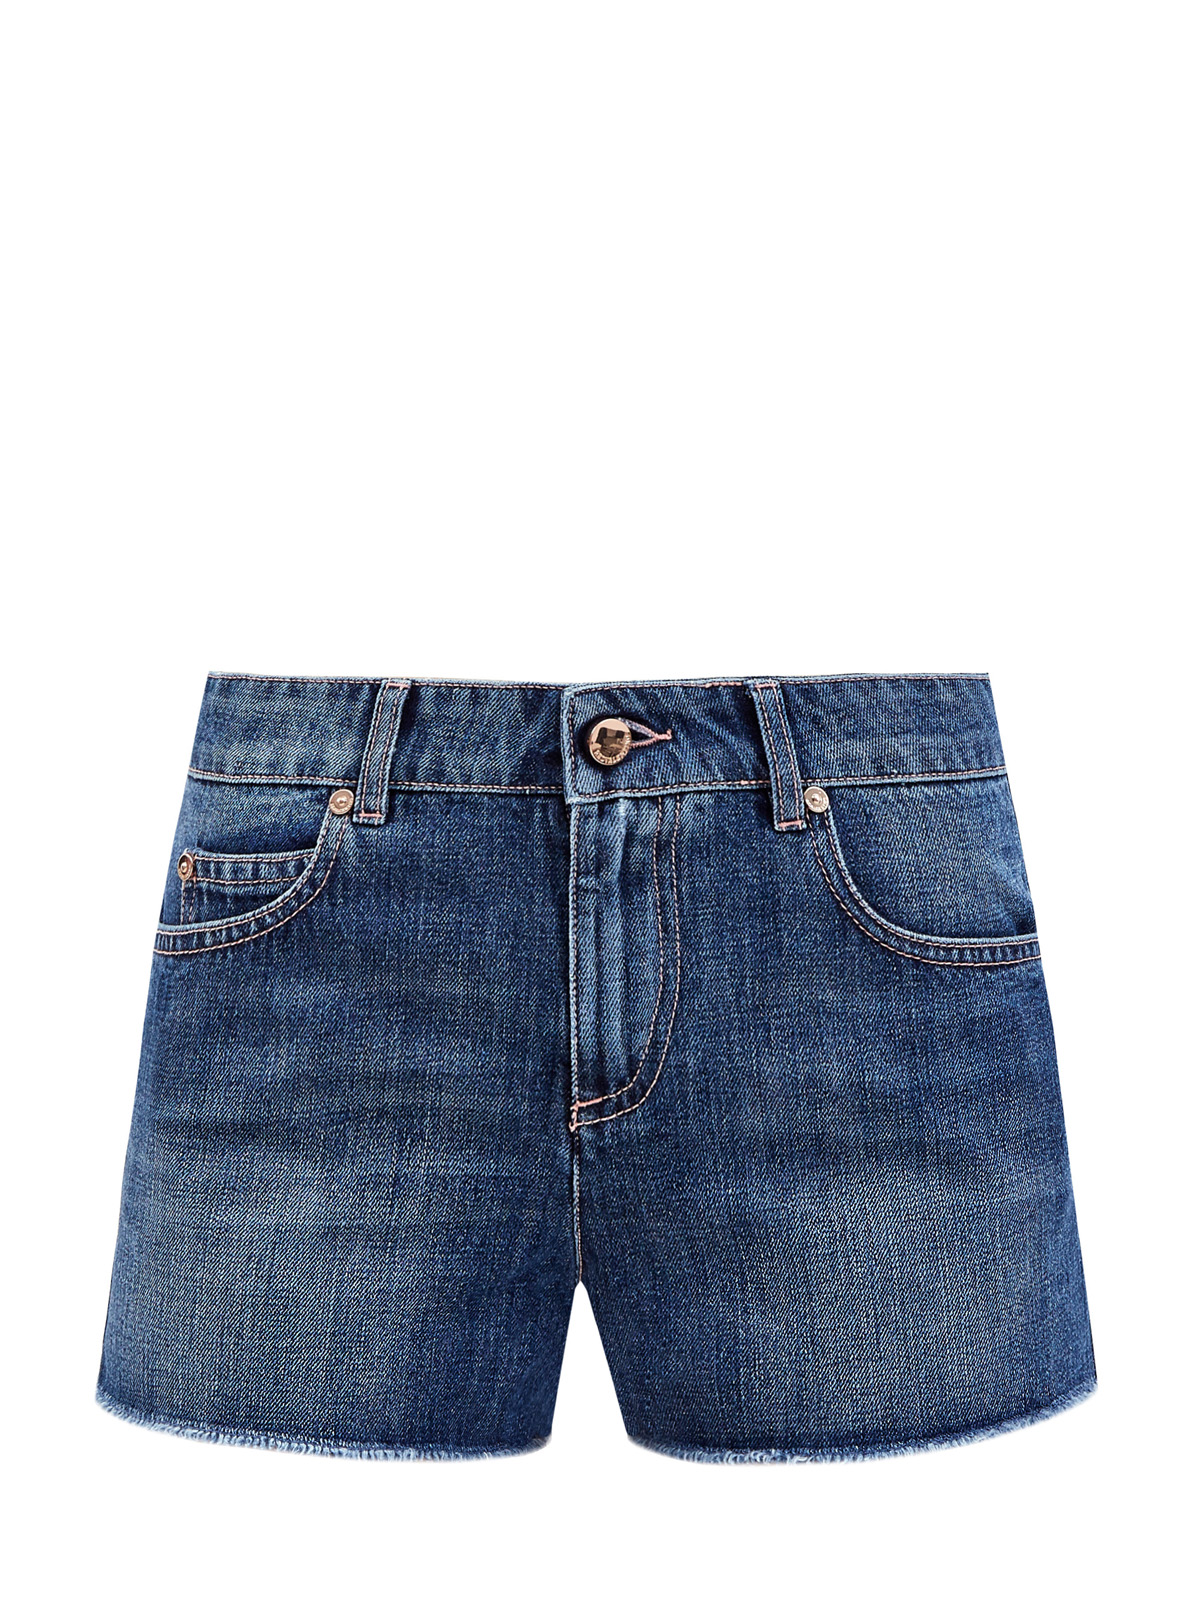 Короткие шорты из денима с бахромой и нашивкой «пуэн-деспри» REDVALENTINO, цвет синий, размер S;L;M